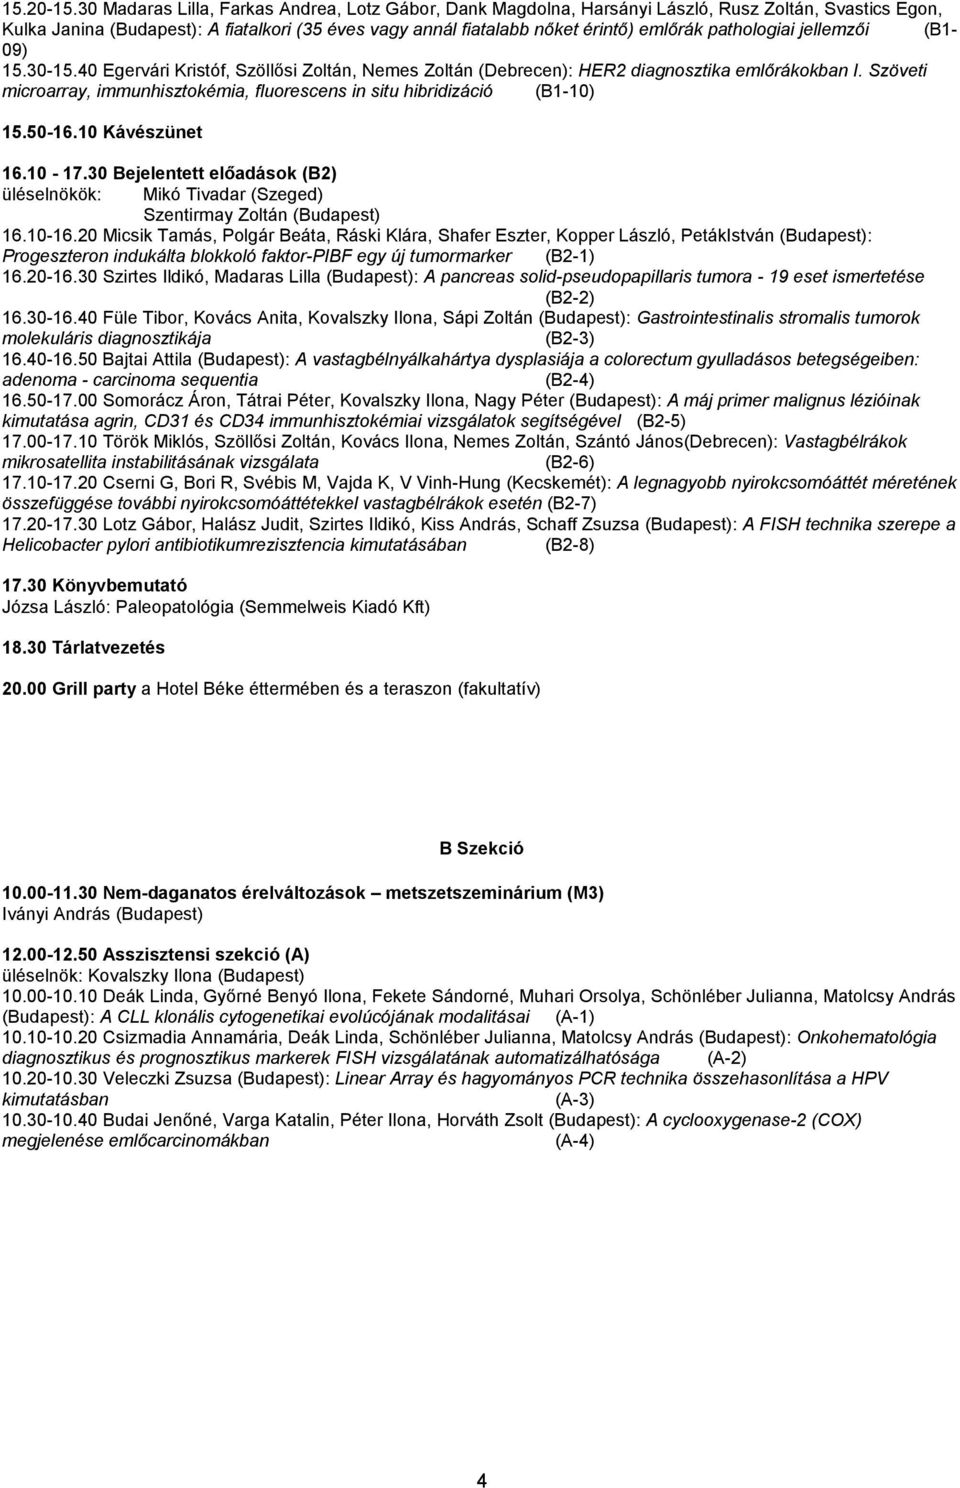 pathologiai jellemzői (B1-09) 15.30-15.40 Egervári Kristóf, Szöllősi Zoltán, Nemes Zoltán (Debrecen): HER2 diagnosztika emlőrákokban I.